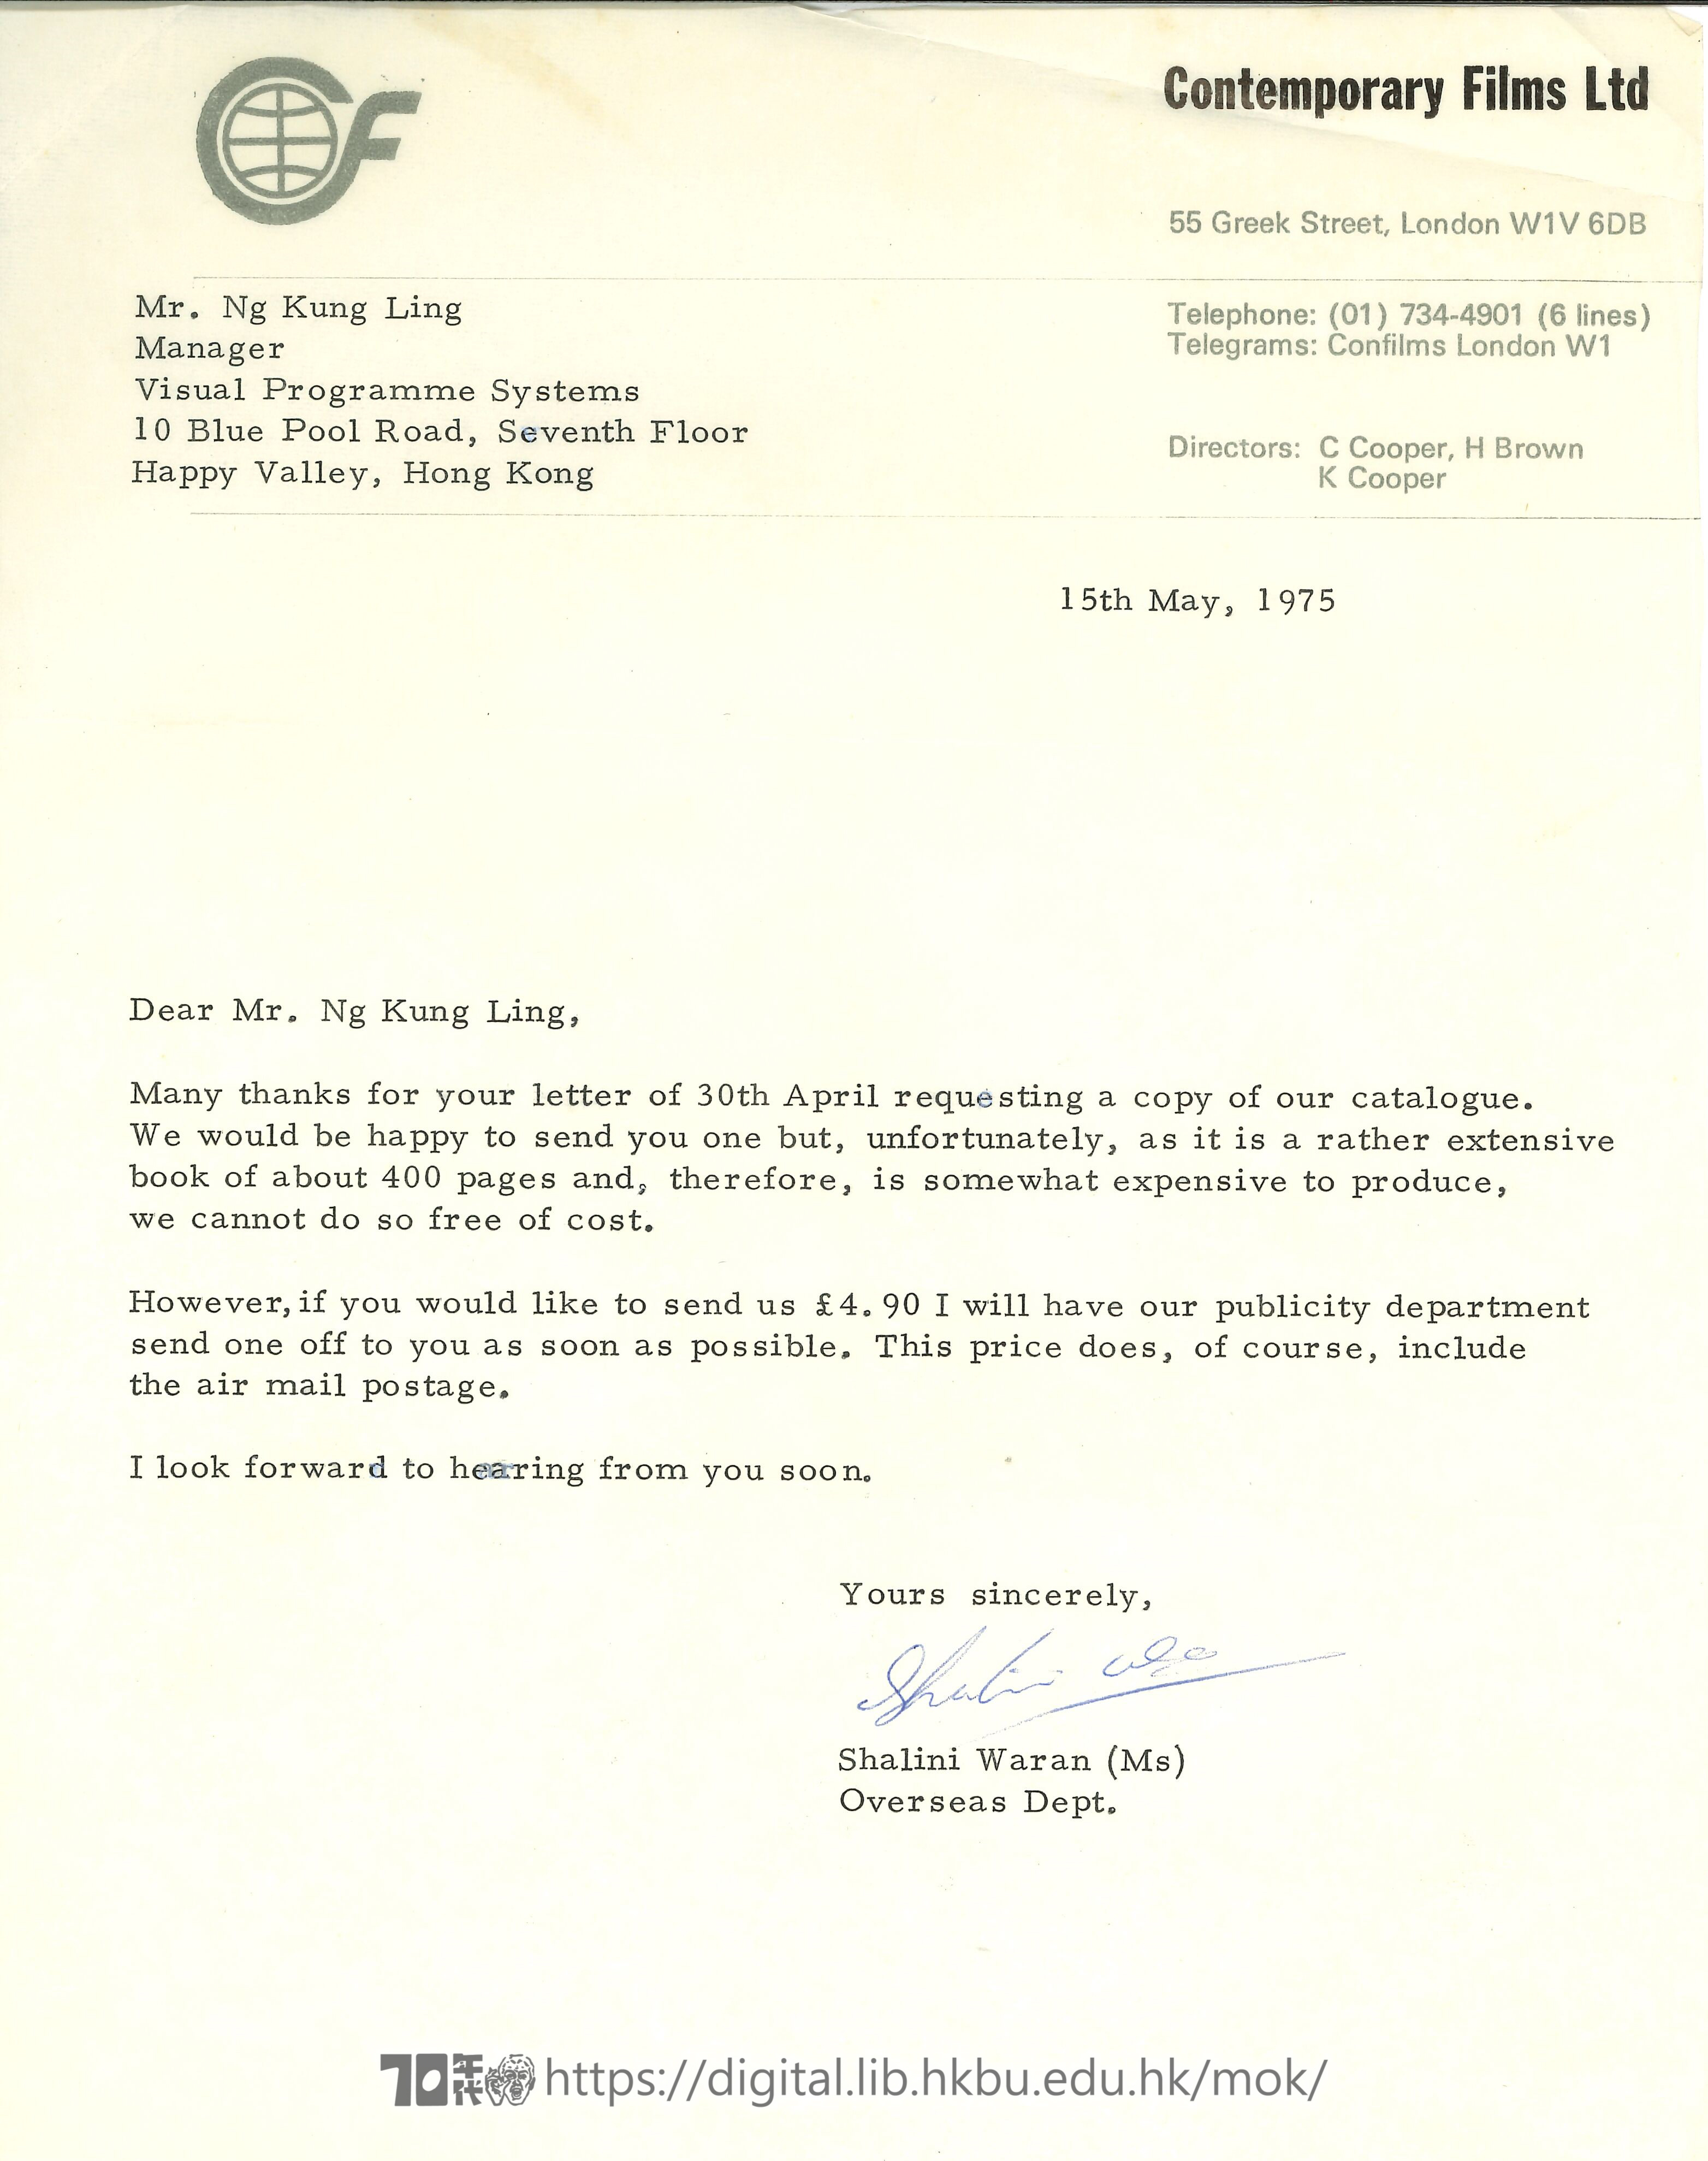   Letter from Shalini Waran to Ng Kung Ling WARAN, Shalini 